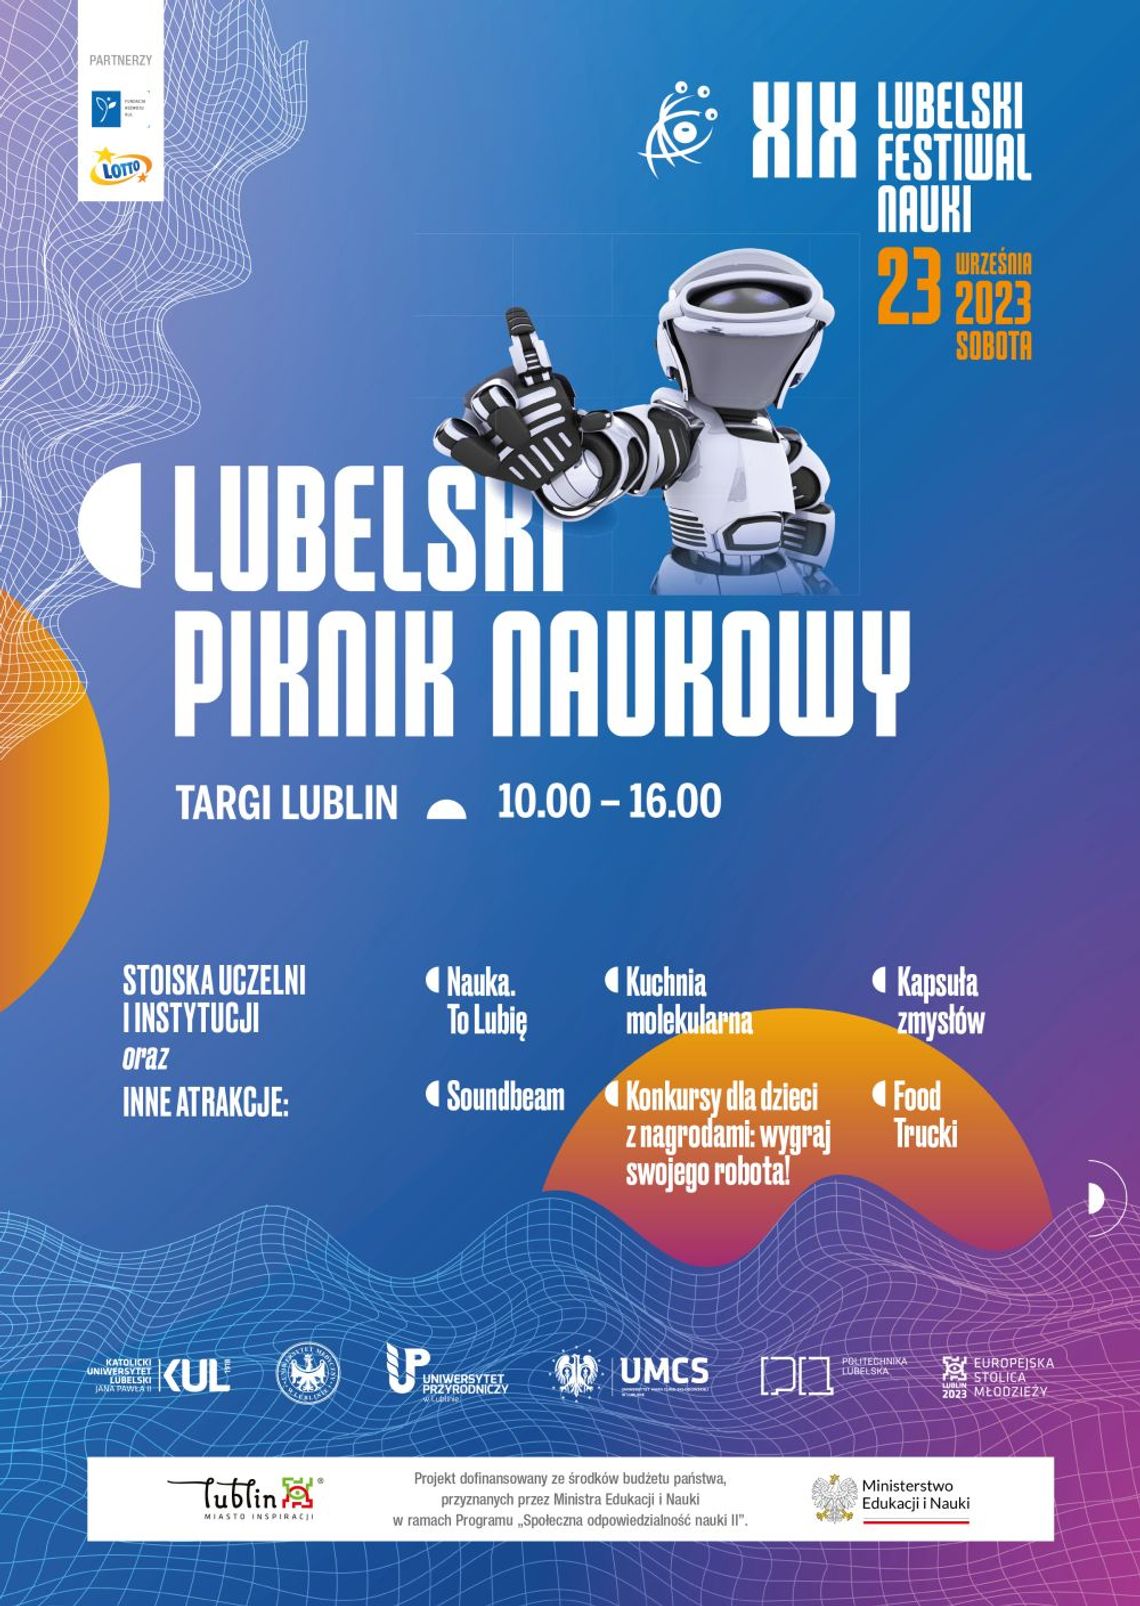 Rekordowy Lubelski Festiwal Nauki już w przyszłym tygodniu